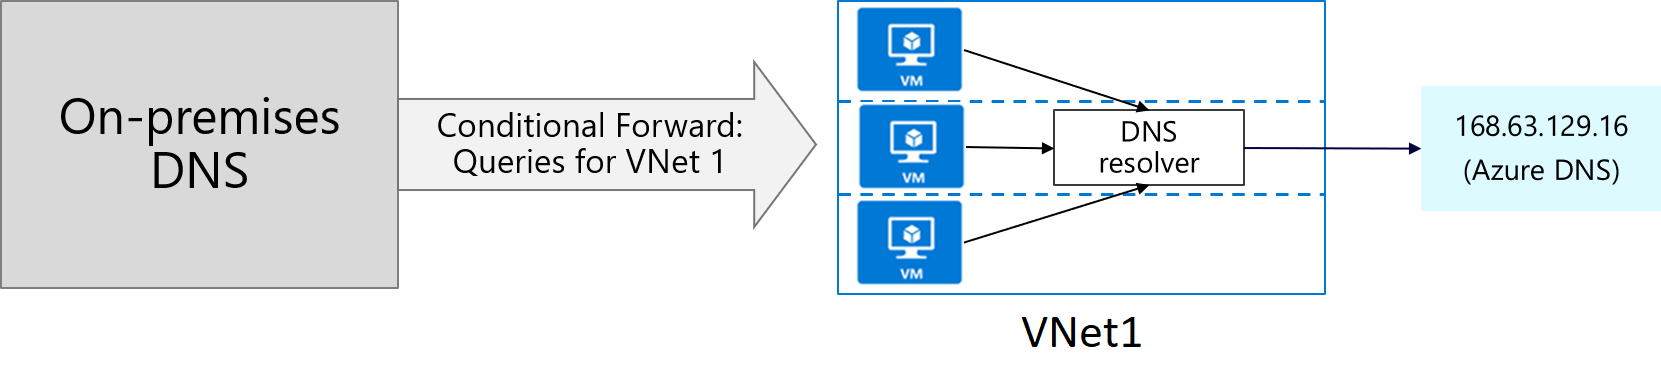 A helyszíni DNS-kiszolgáló feltételes továbbítással továbbítja az 1. virtuális hálózat lekérdezéseit. A VNet 1 DNS-feloldója lekérdezéseket küld az Azure DNS-nek megoldás céljából.